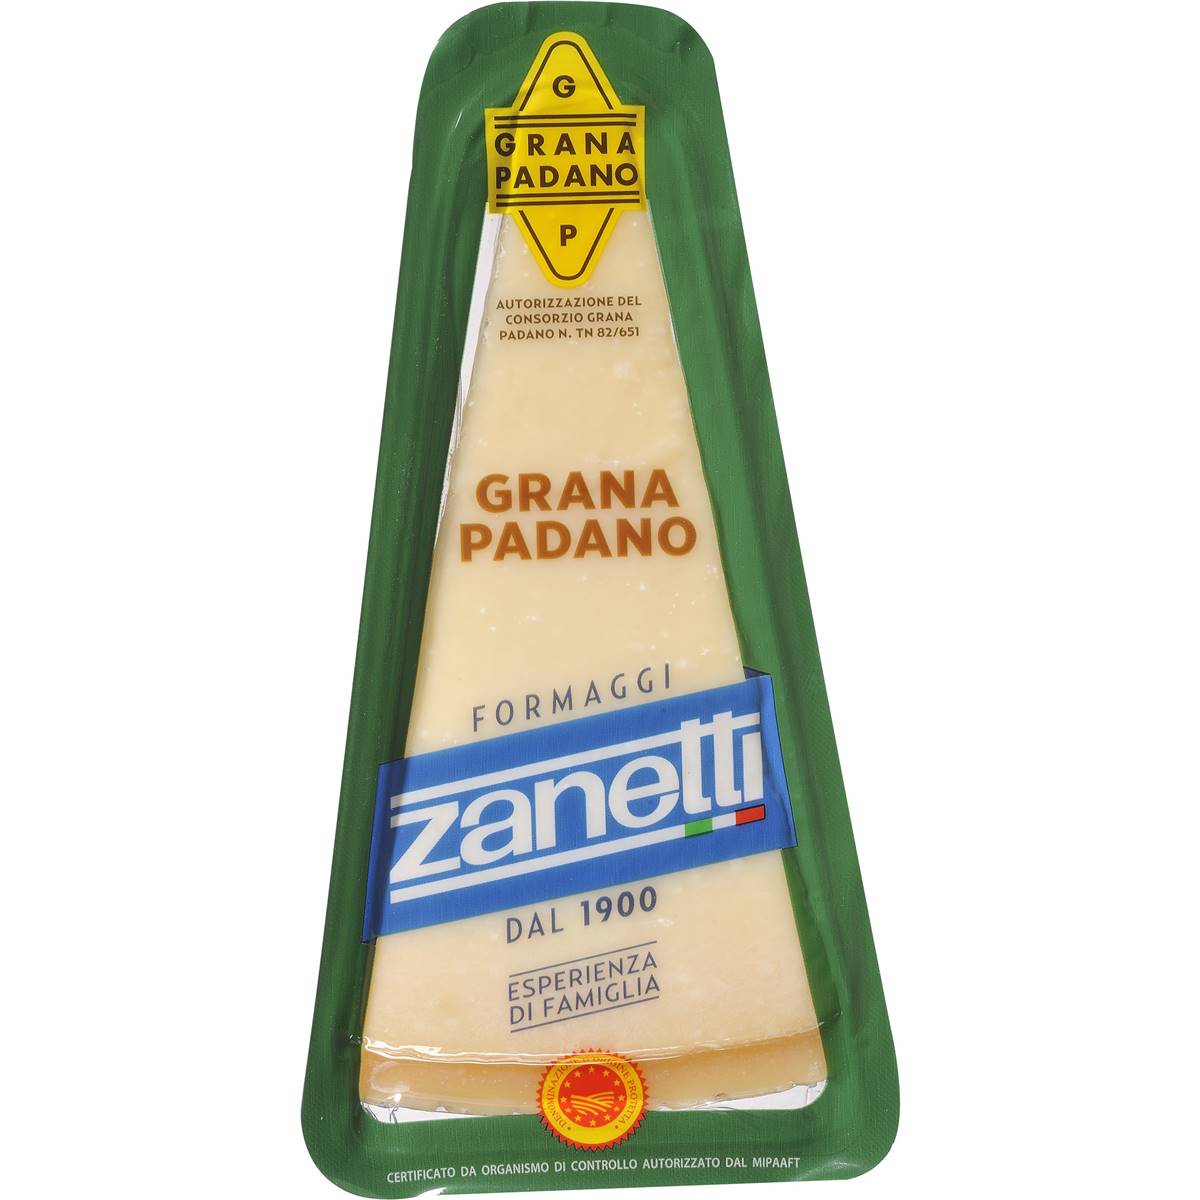 Calories in Zanetti Firm Parmesan Cheese Grana Padano